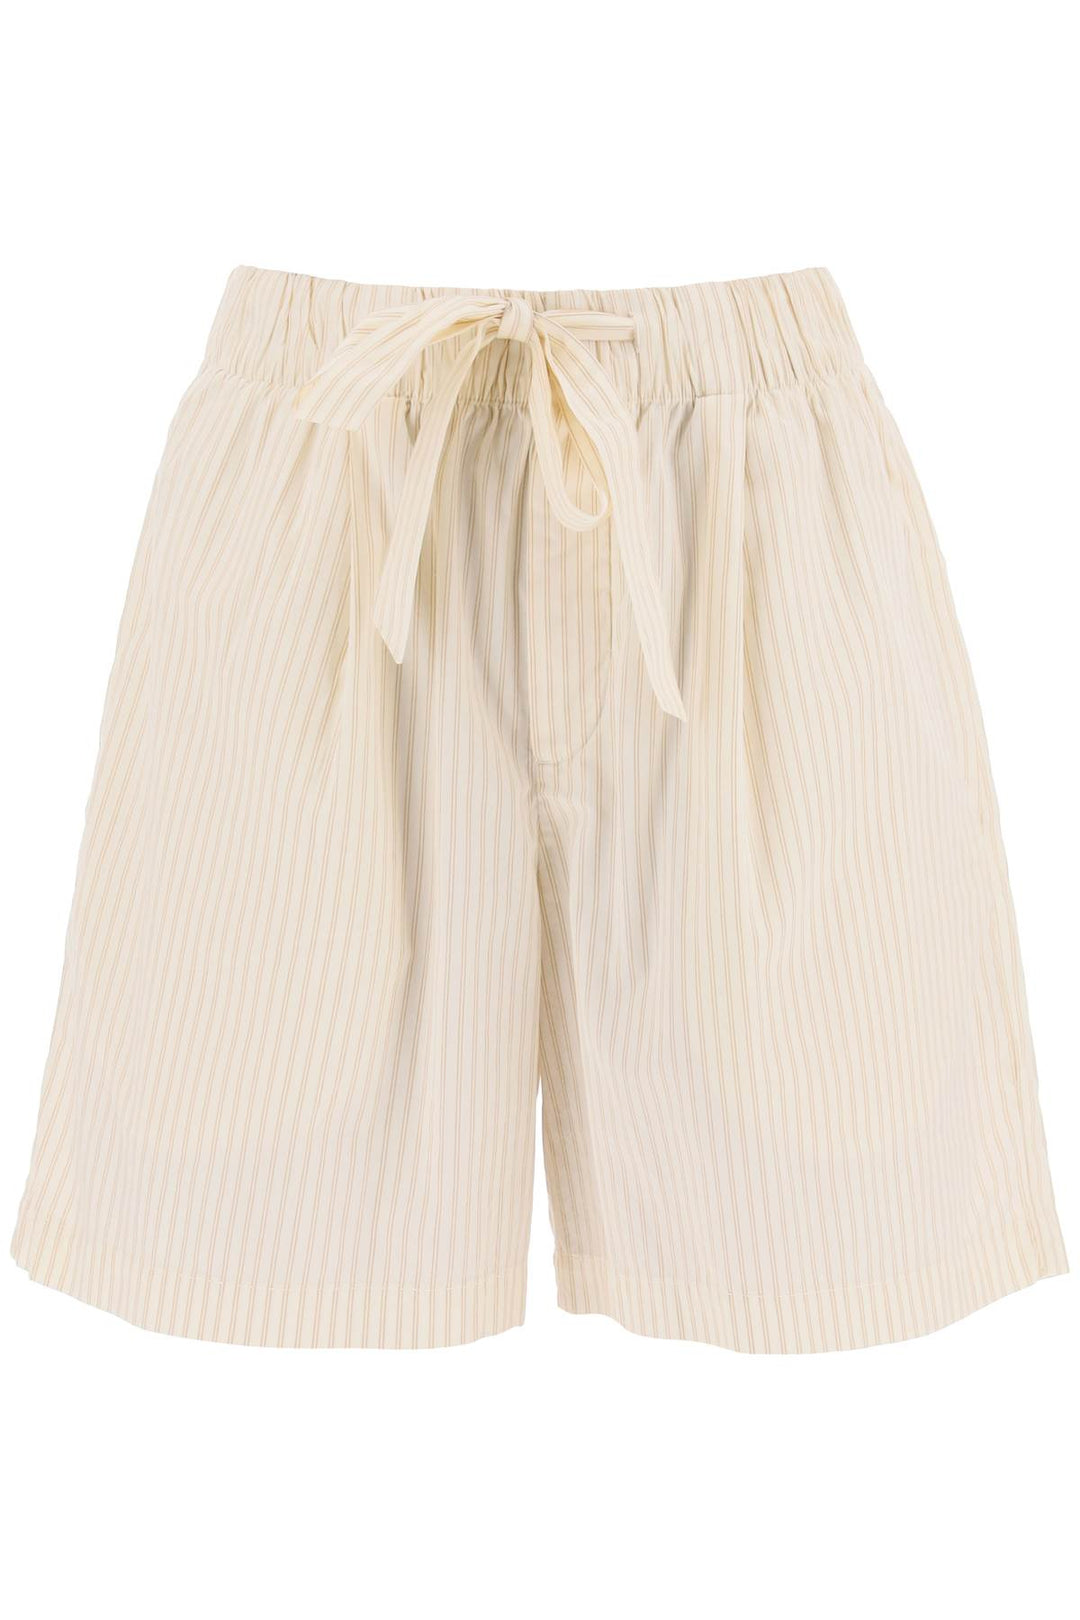 Birkenstock X Tekla Organic Poplin Pajama Shorts   Bianco